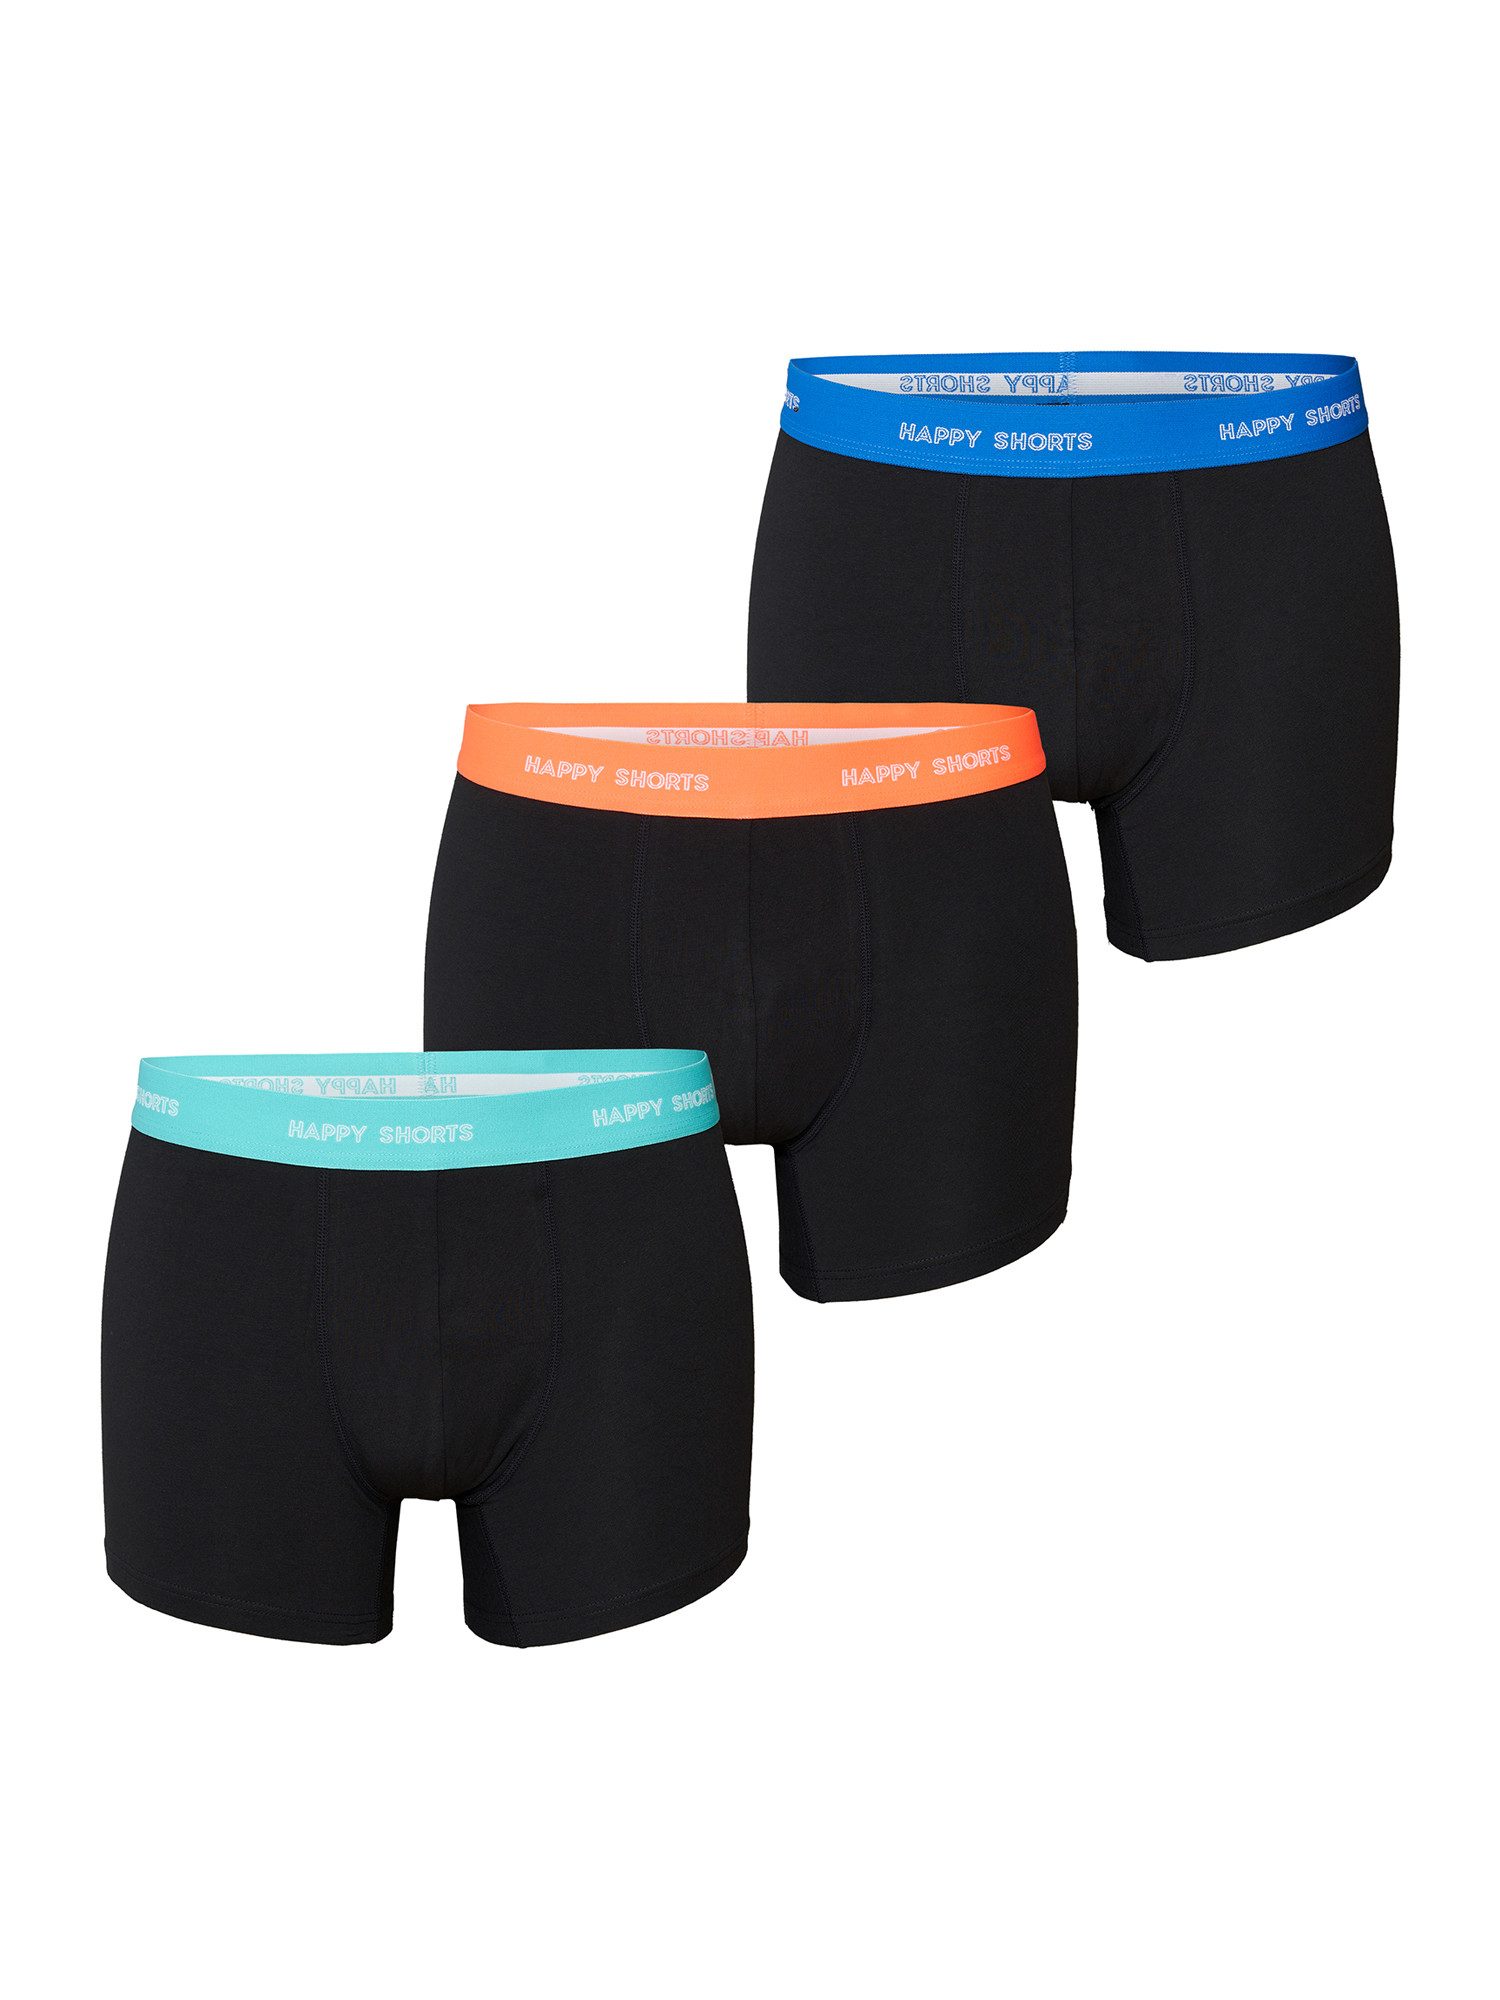 Phil & Co. Retro Pants All Styles (3-St) Boxershorts Trunks Herren bequem und stylisch